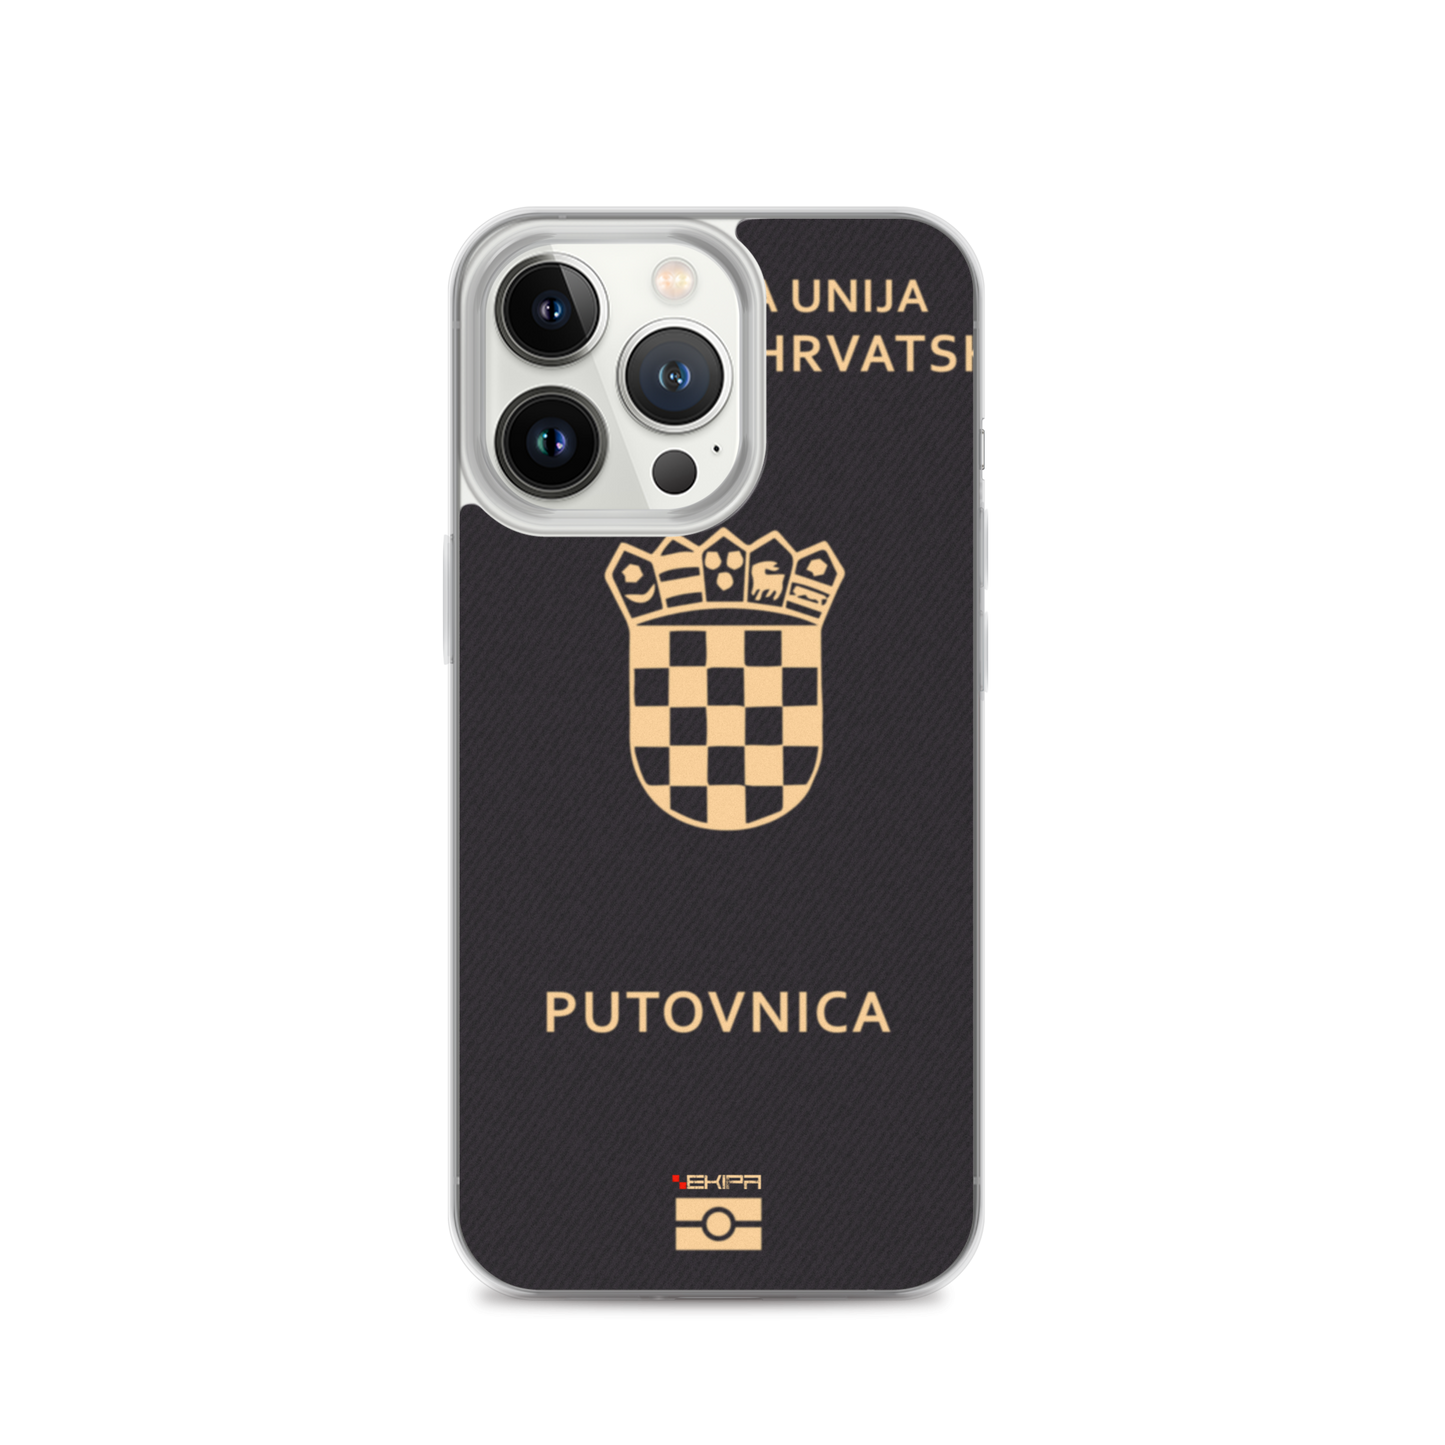 "Hrvatska Putovnica" - iPhone case